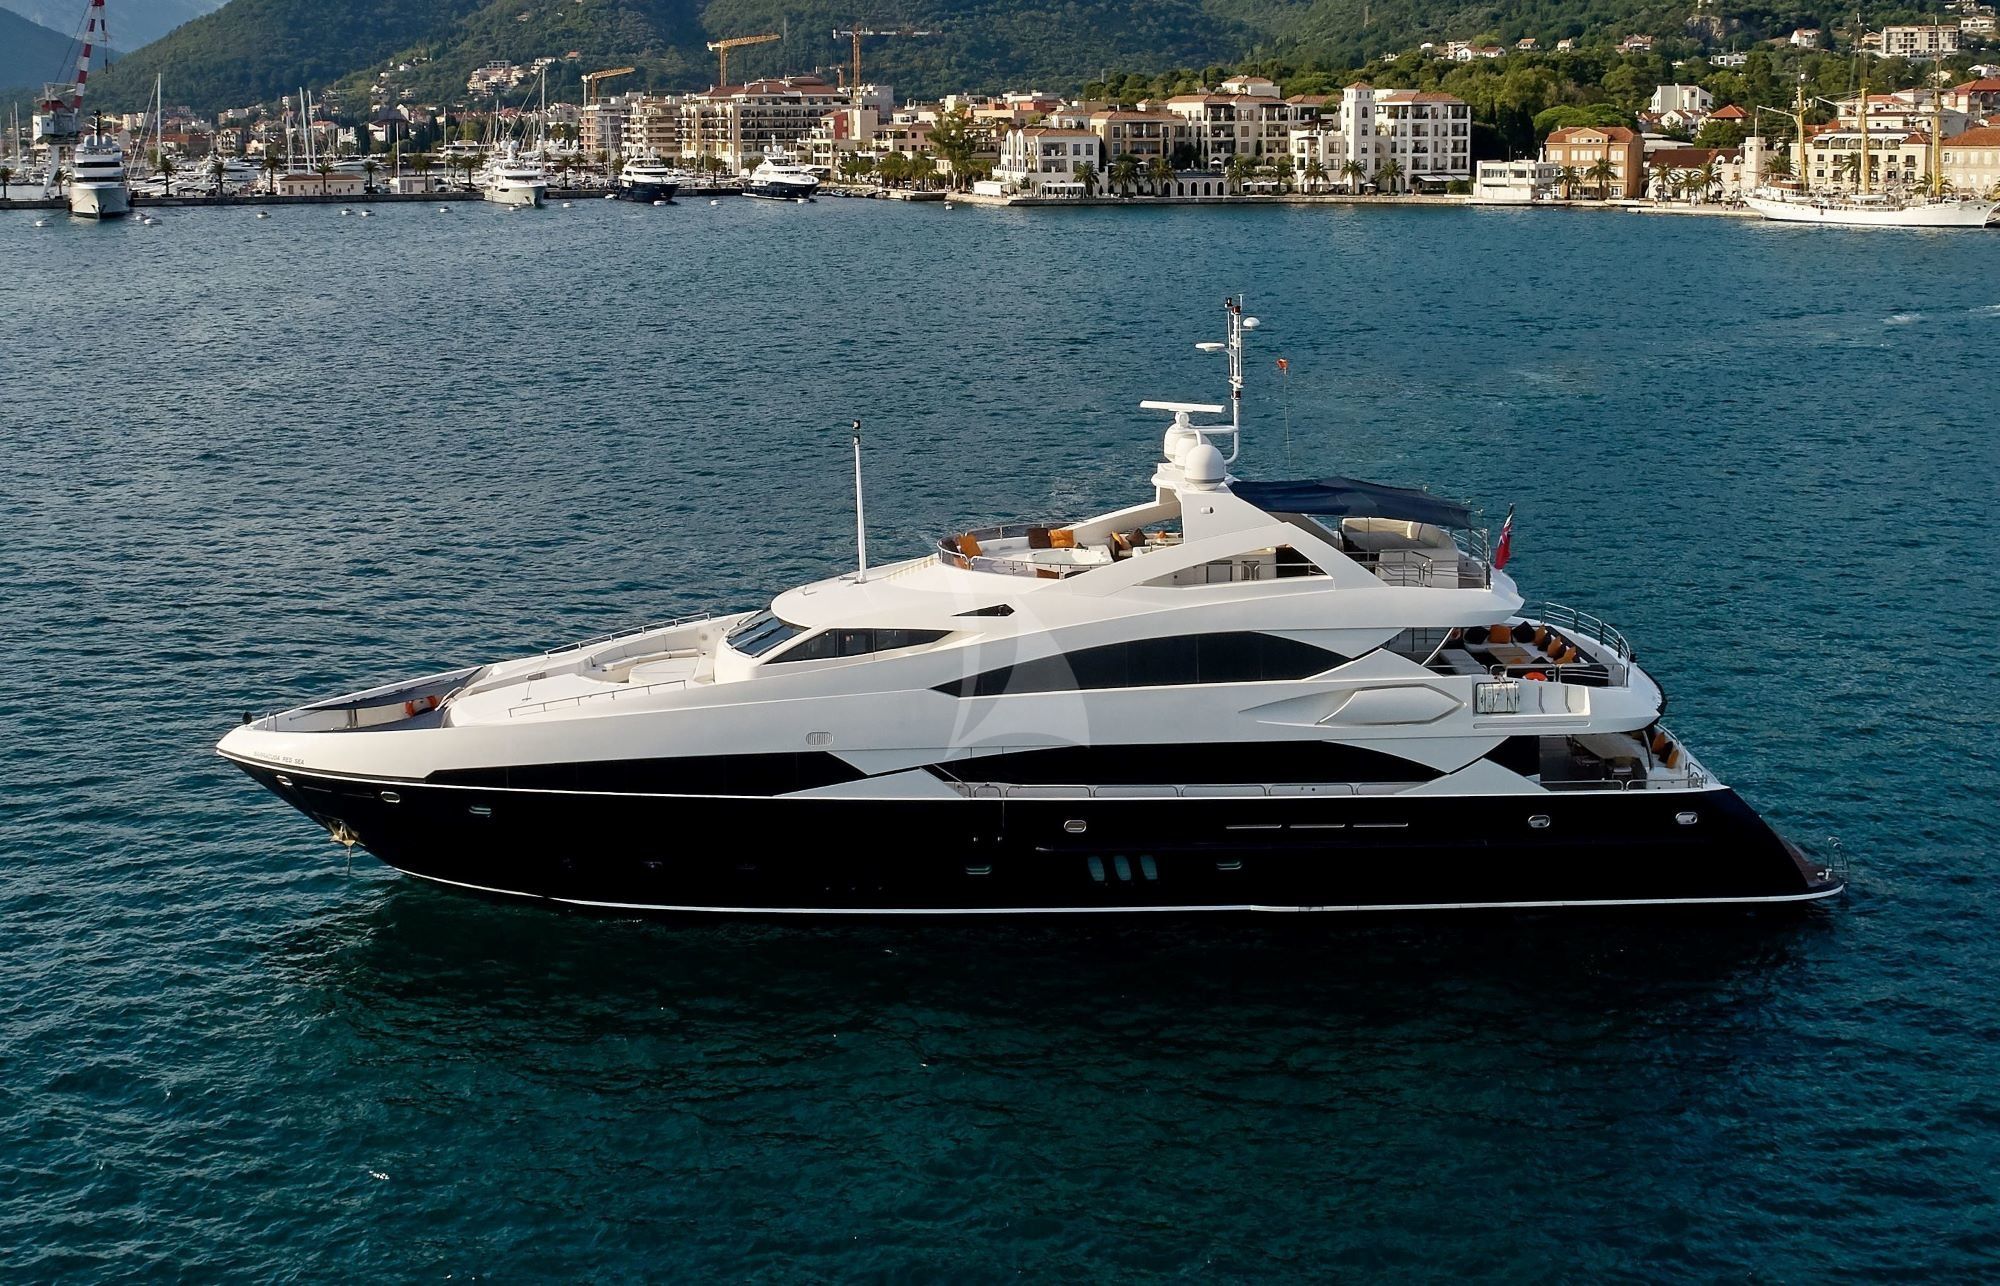 Luxury Crewed Motor Yacht 37m Sunseeker - 6 Cabins - Bodrum - Marmaris - Boatbookings